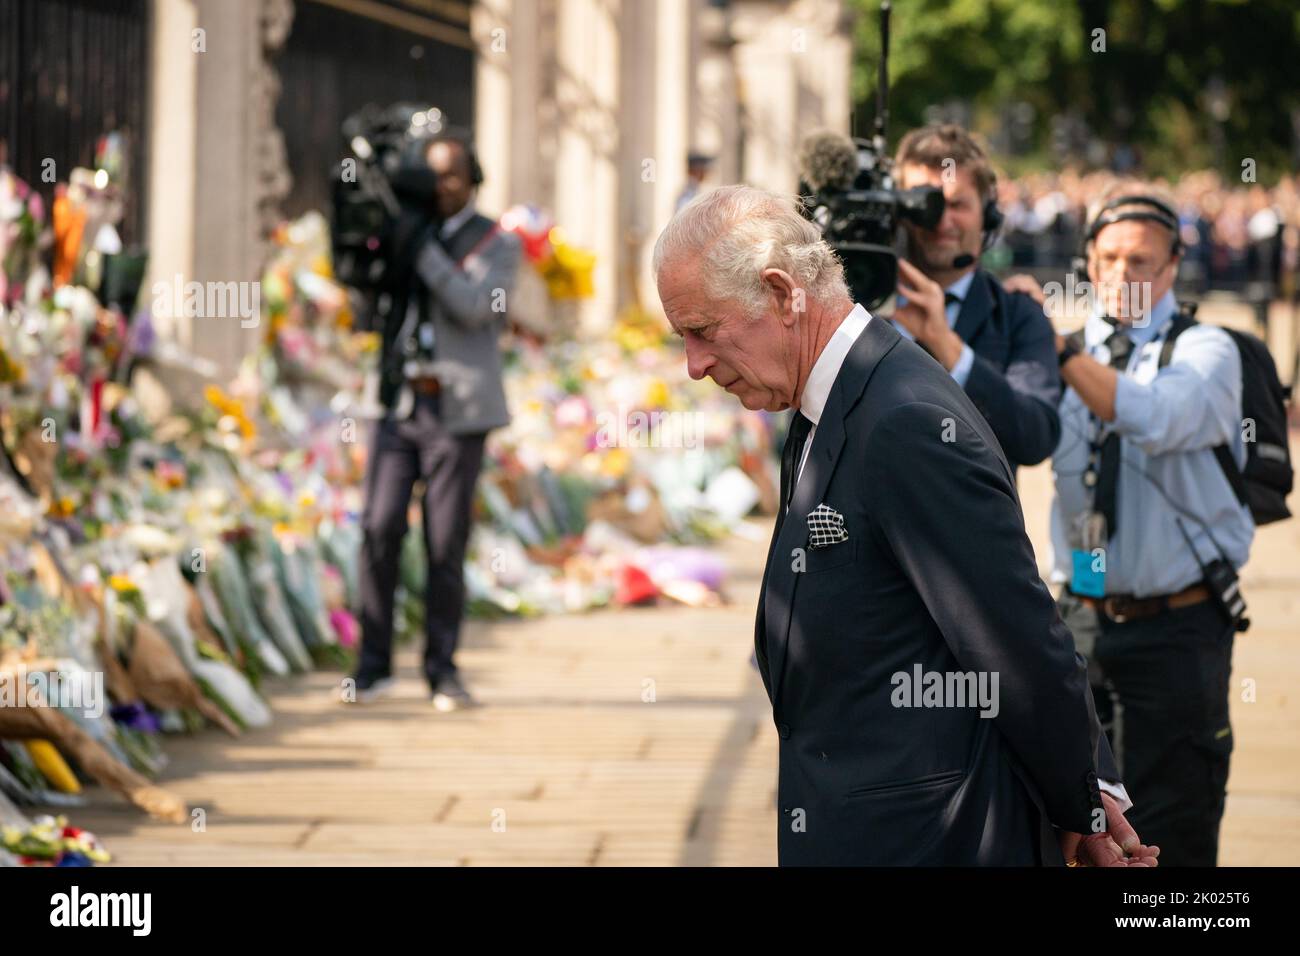 Le roi Charles III regarde les fleurs à l'extérieur de Buckingham Palace, Londres, après avoir voyagé de Balmoral après la mort de la reine Elizabeth II jeudi. Date de la photo: Vendredi 9 septembre 2022. Banque D'Images